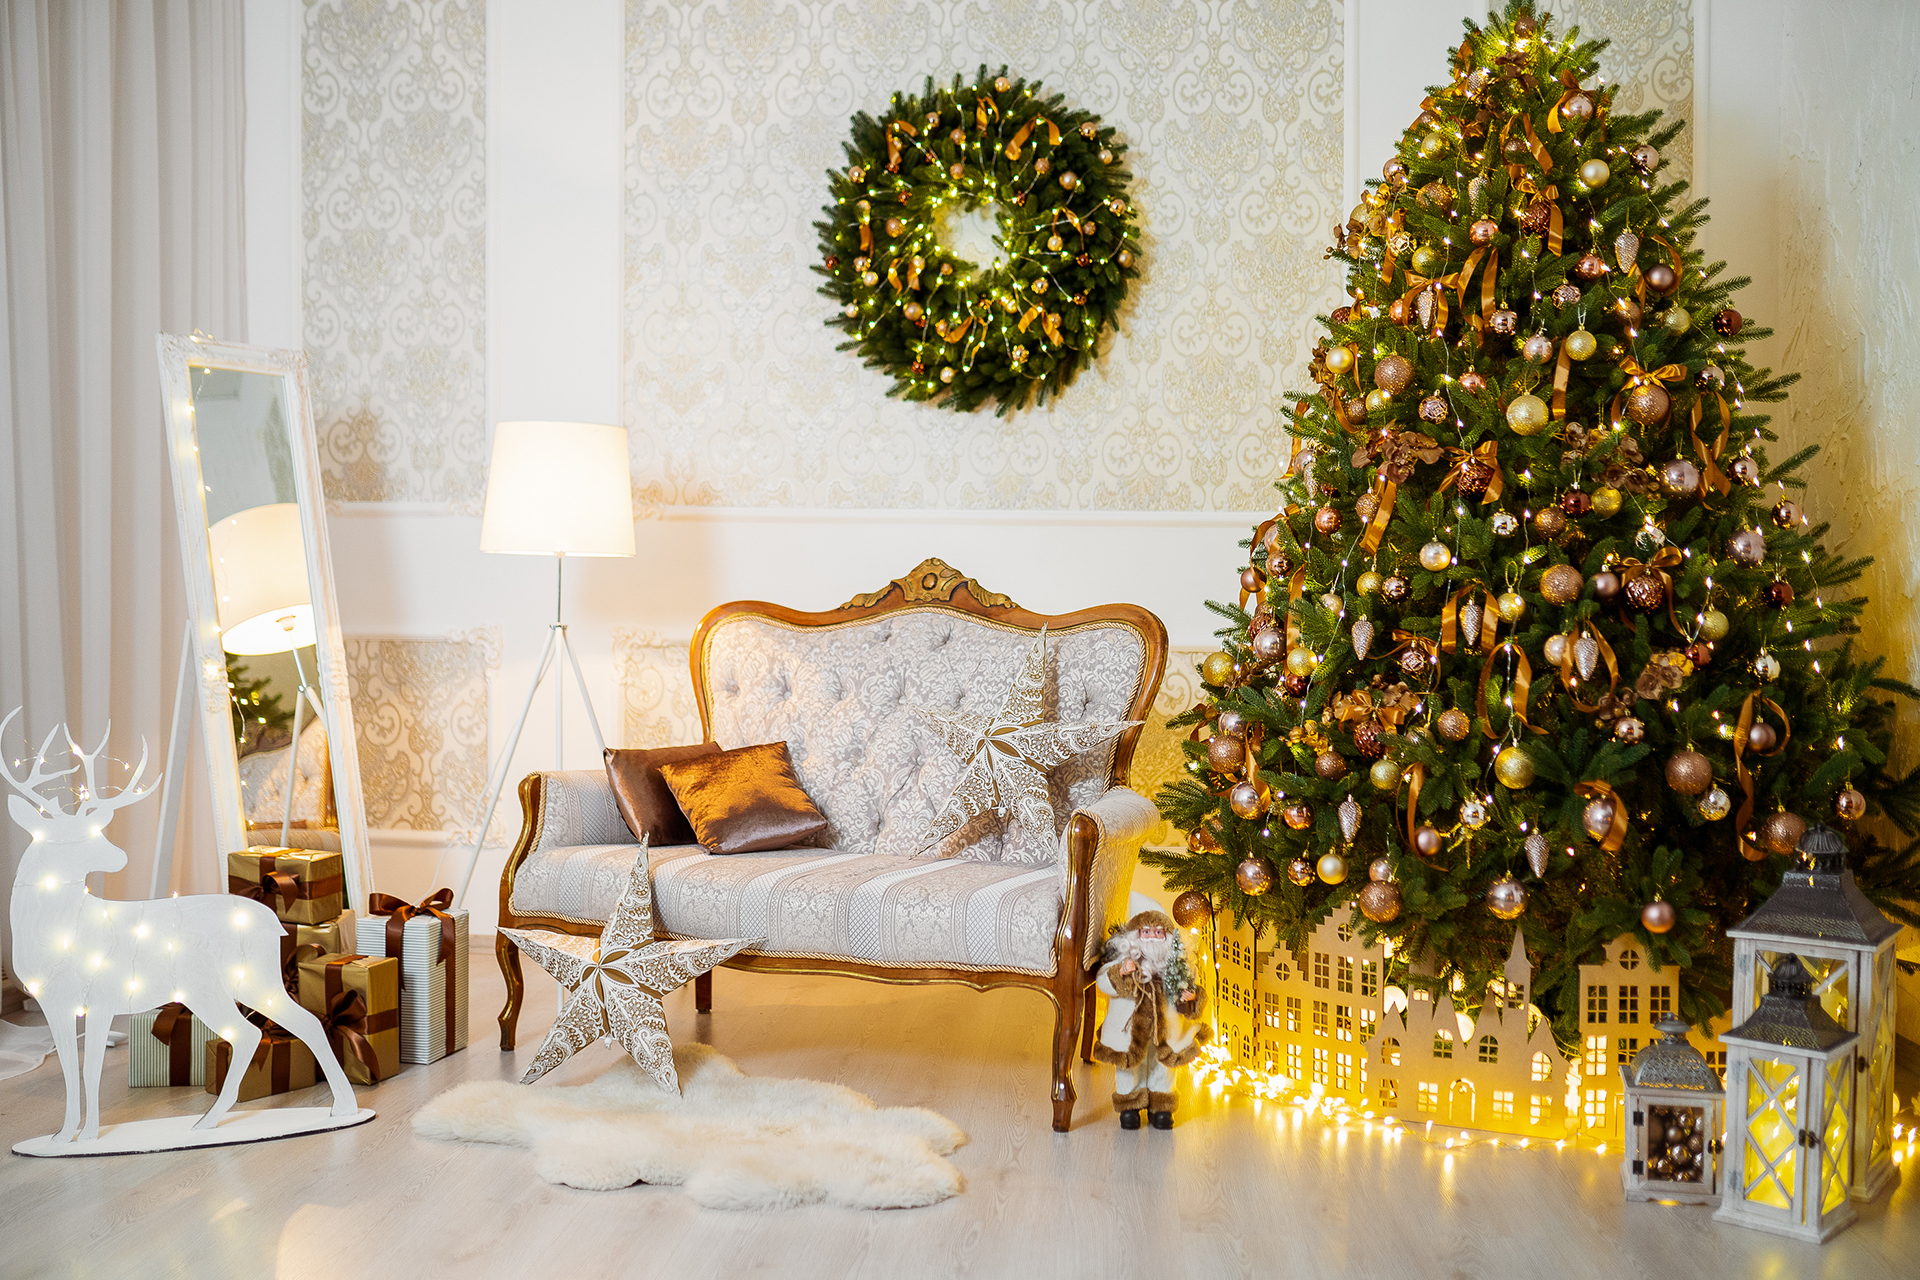 Как нарядить елку к Новому году – традиции и модные тренды 2018. Обзор с фото